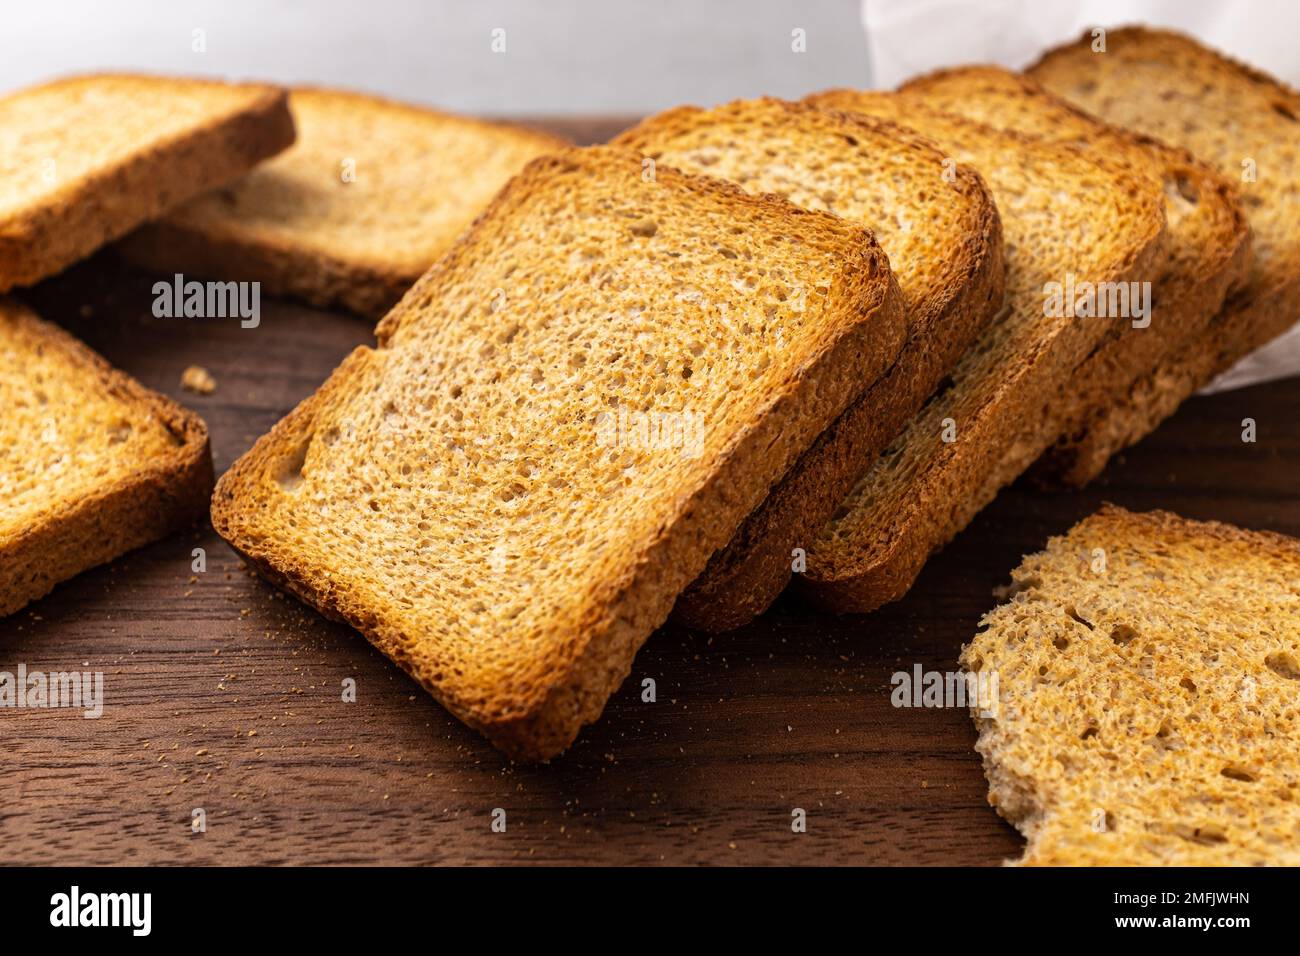 Biscuits de blé entier croustillants et salés à base de blé entier Banque D'Images